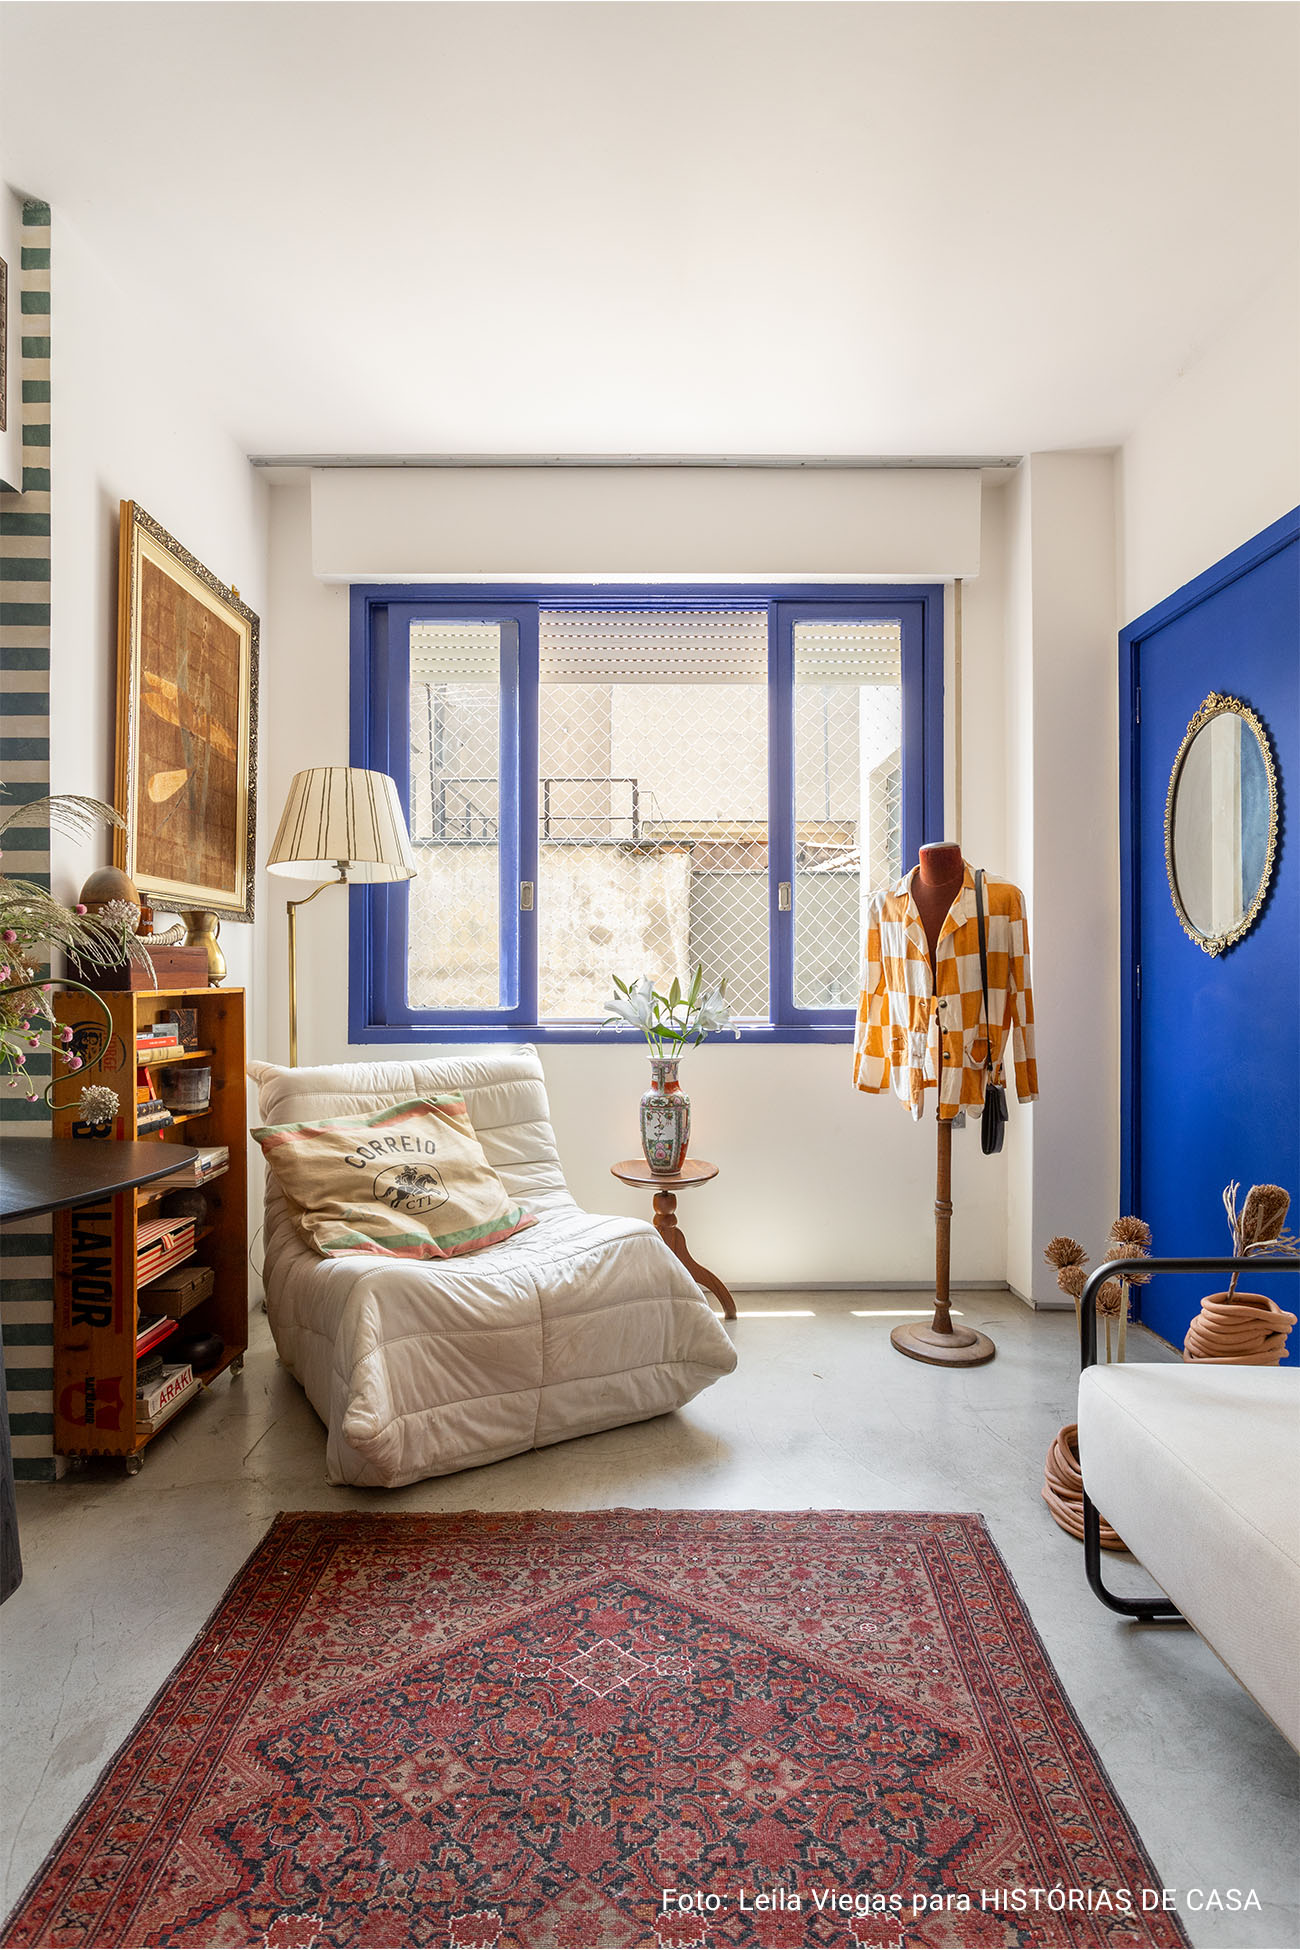 Apartamento pequeno estilo quitinete com muitos garimpos e ideias de DIY